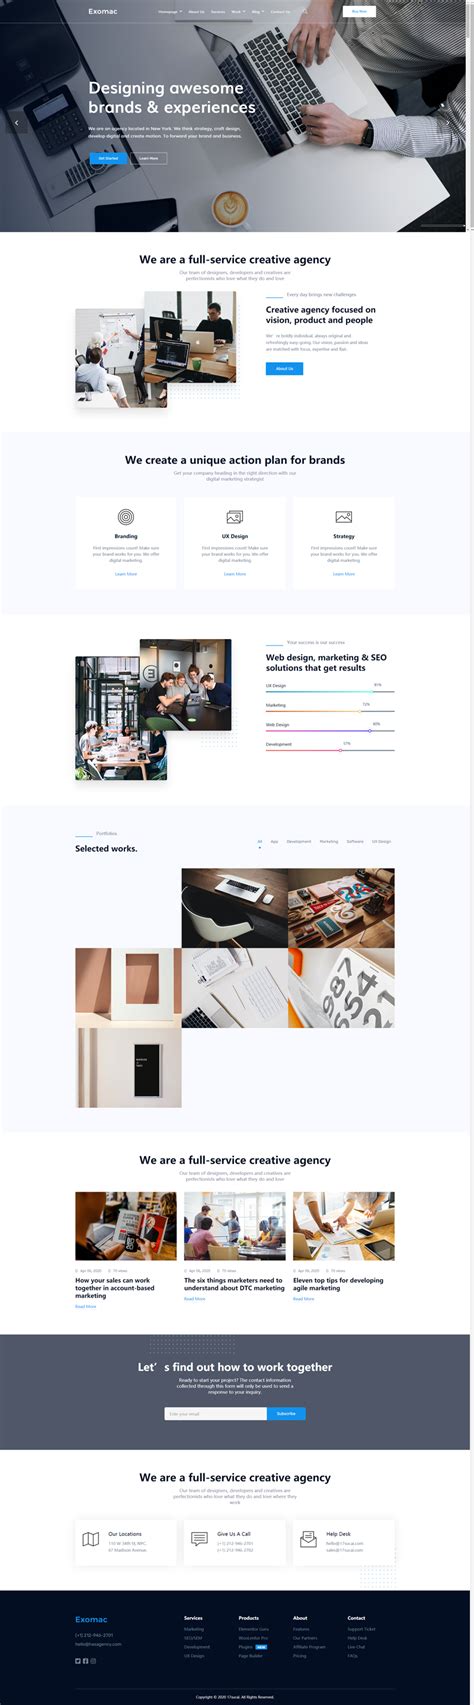 企业官网首页-企业网站设计作品|公司-特创易·GO